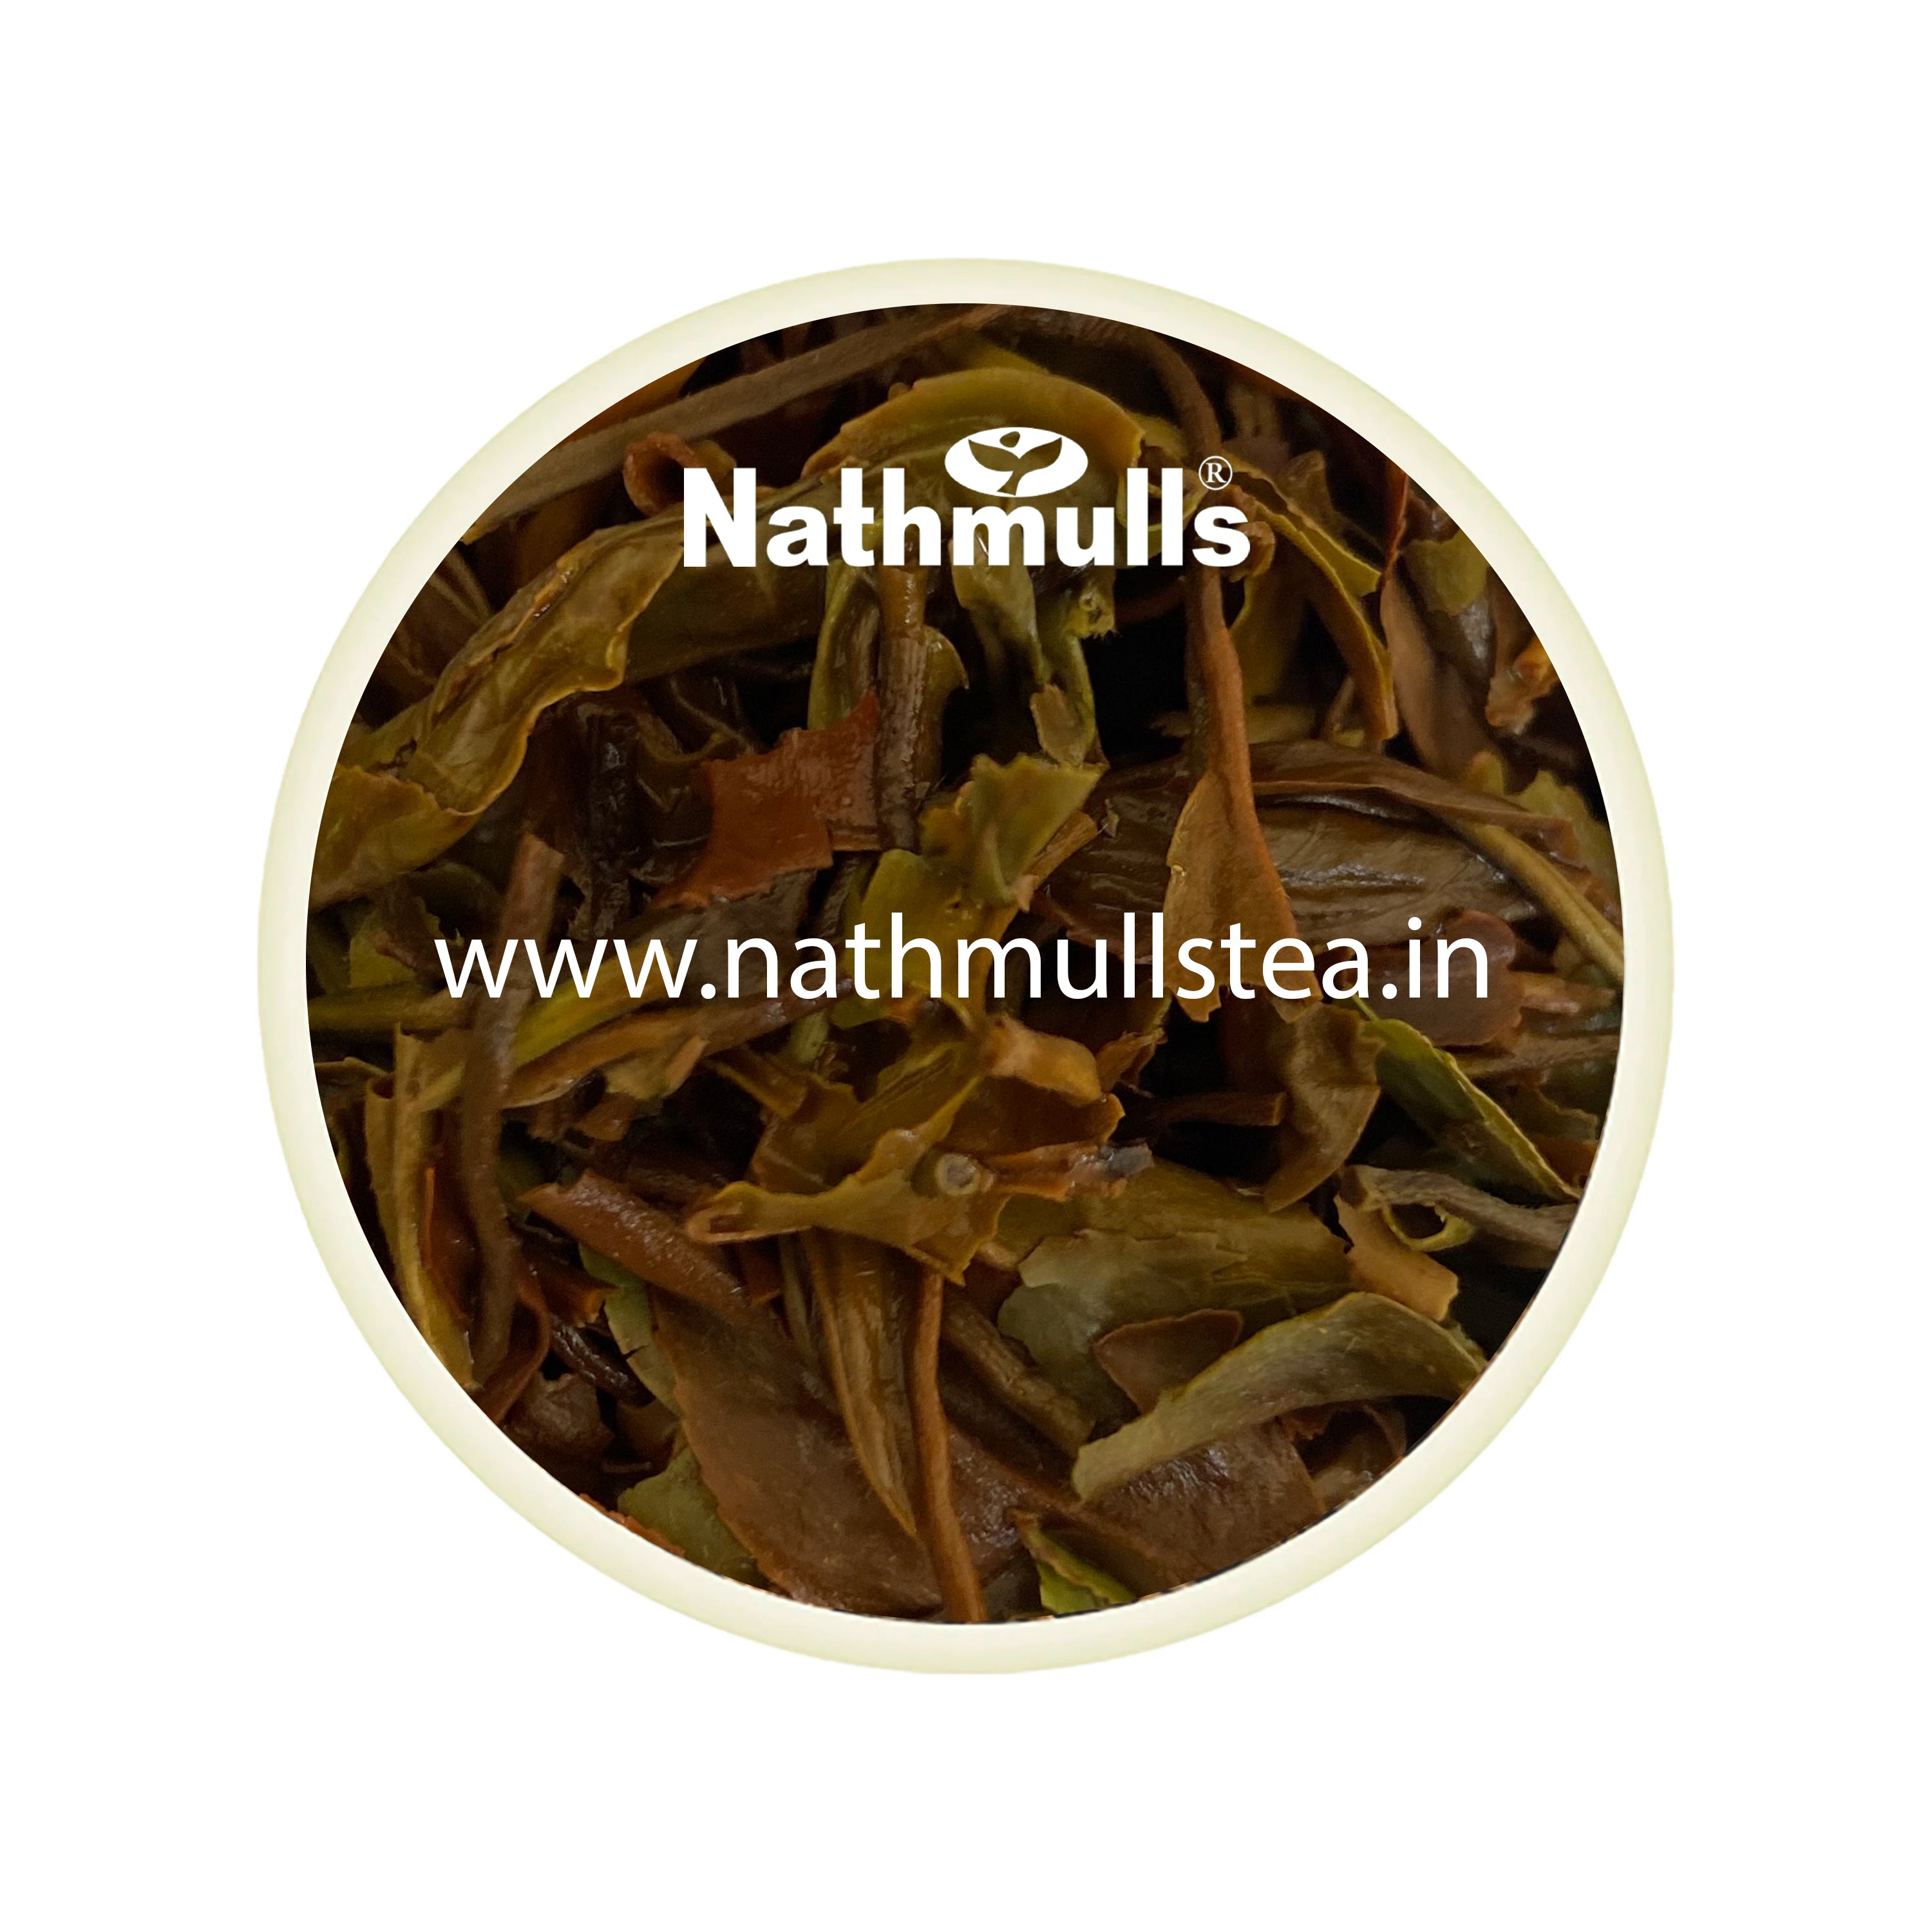 Gopaldhara - Moonlit Nite Darjeeling Black Tea Autumn Flush 2022